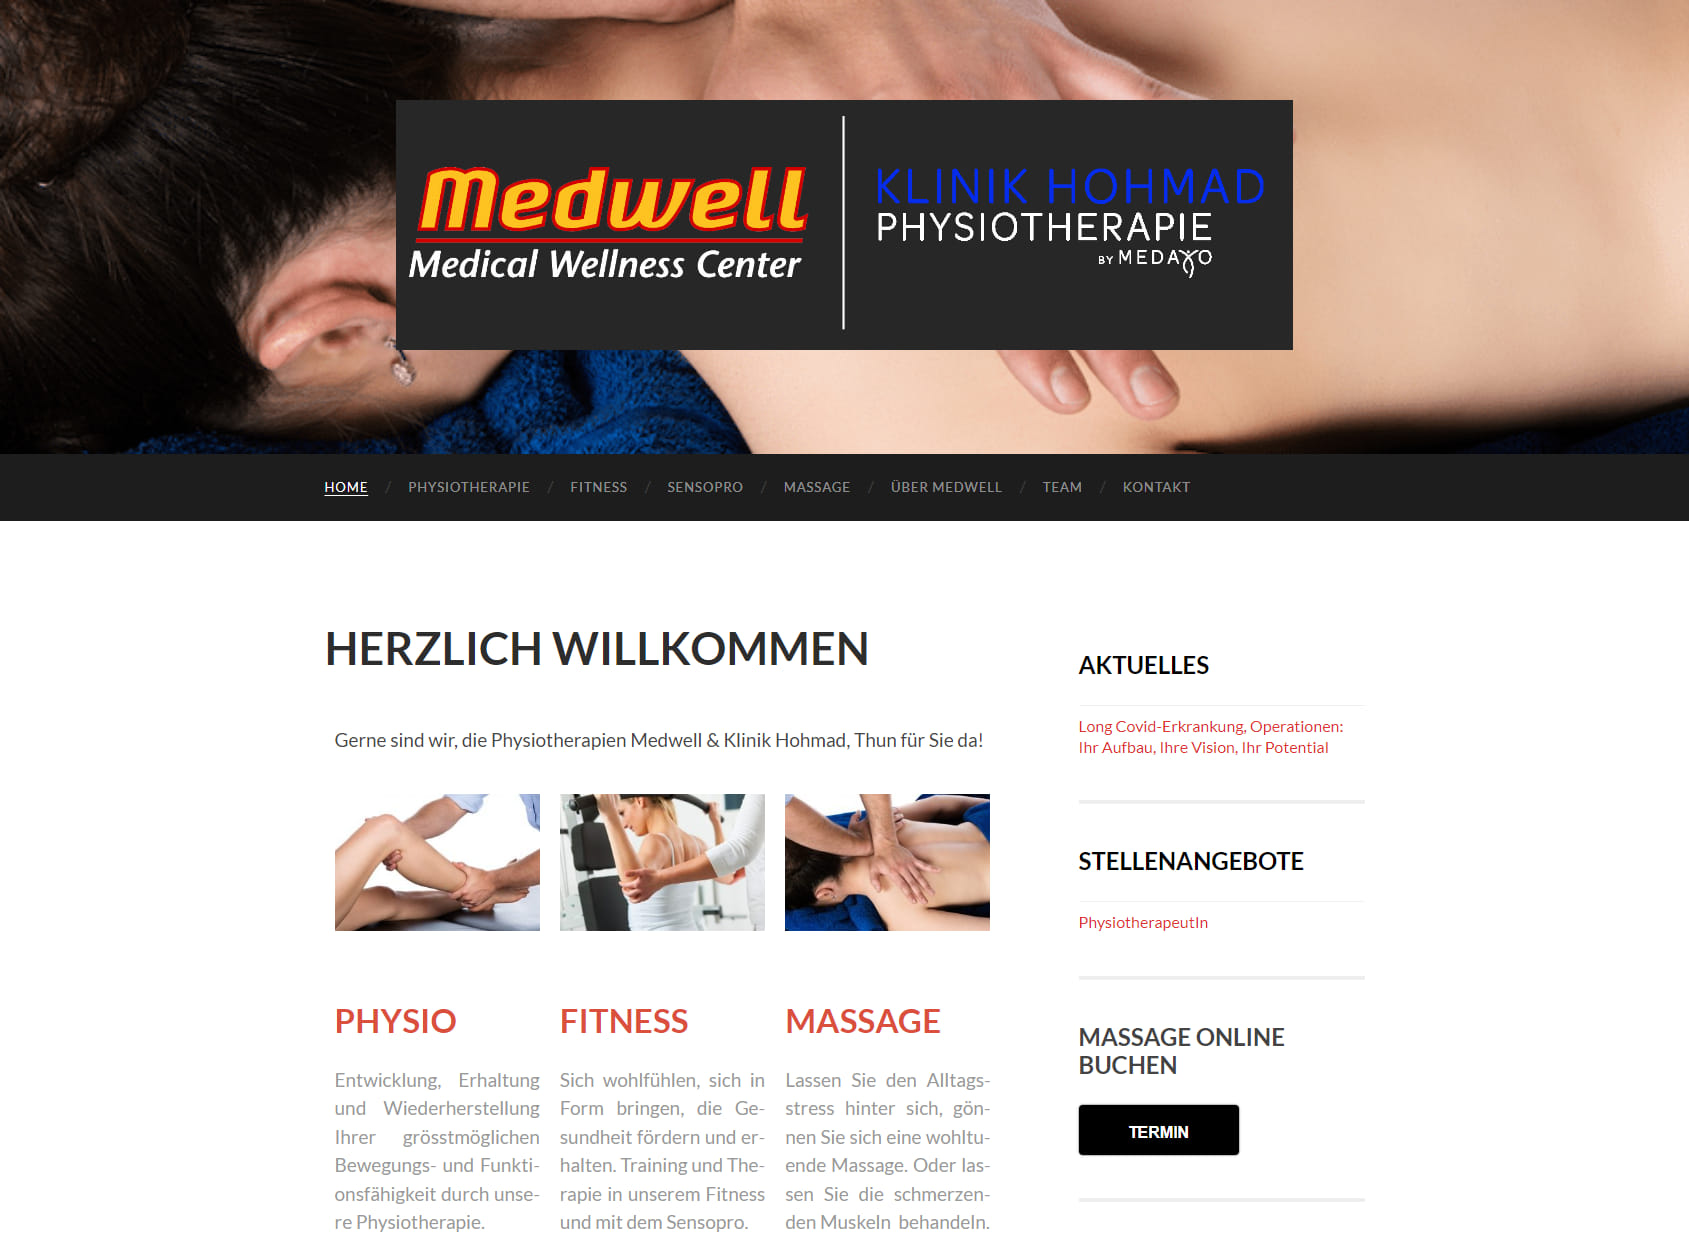 Physiotherapien Medwell & Klinik Hohmad Thun